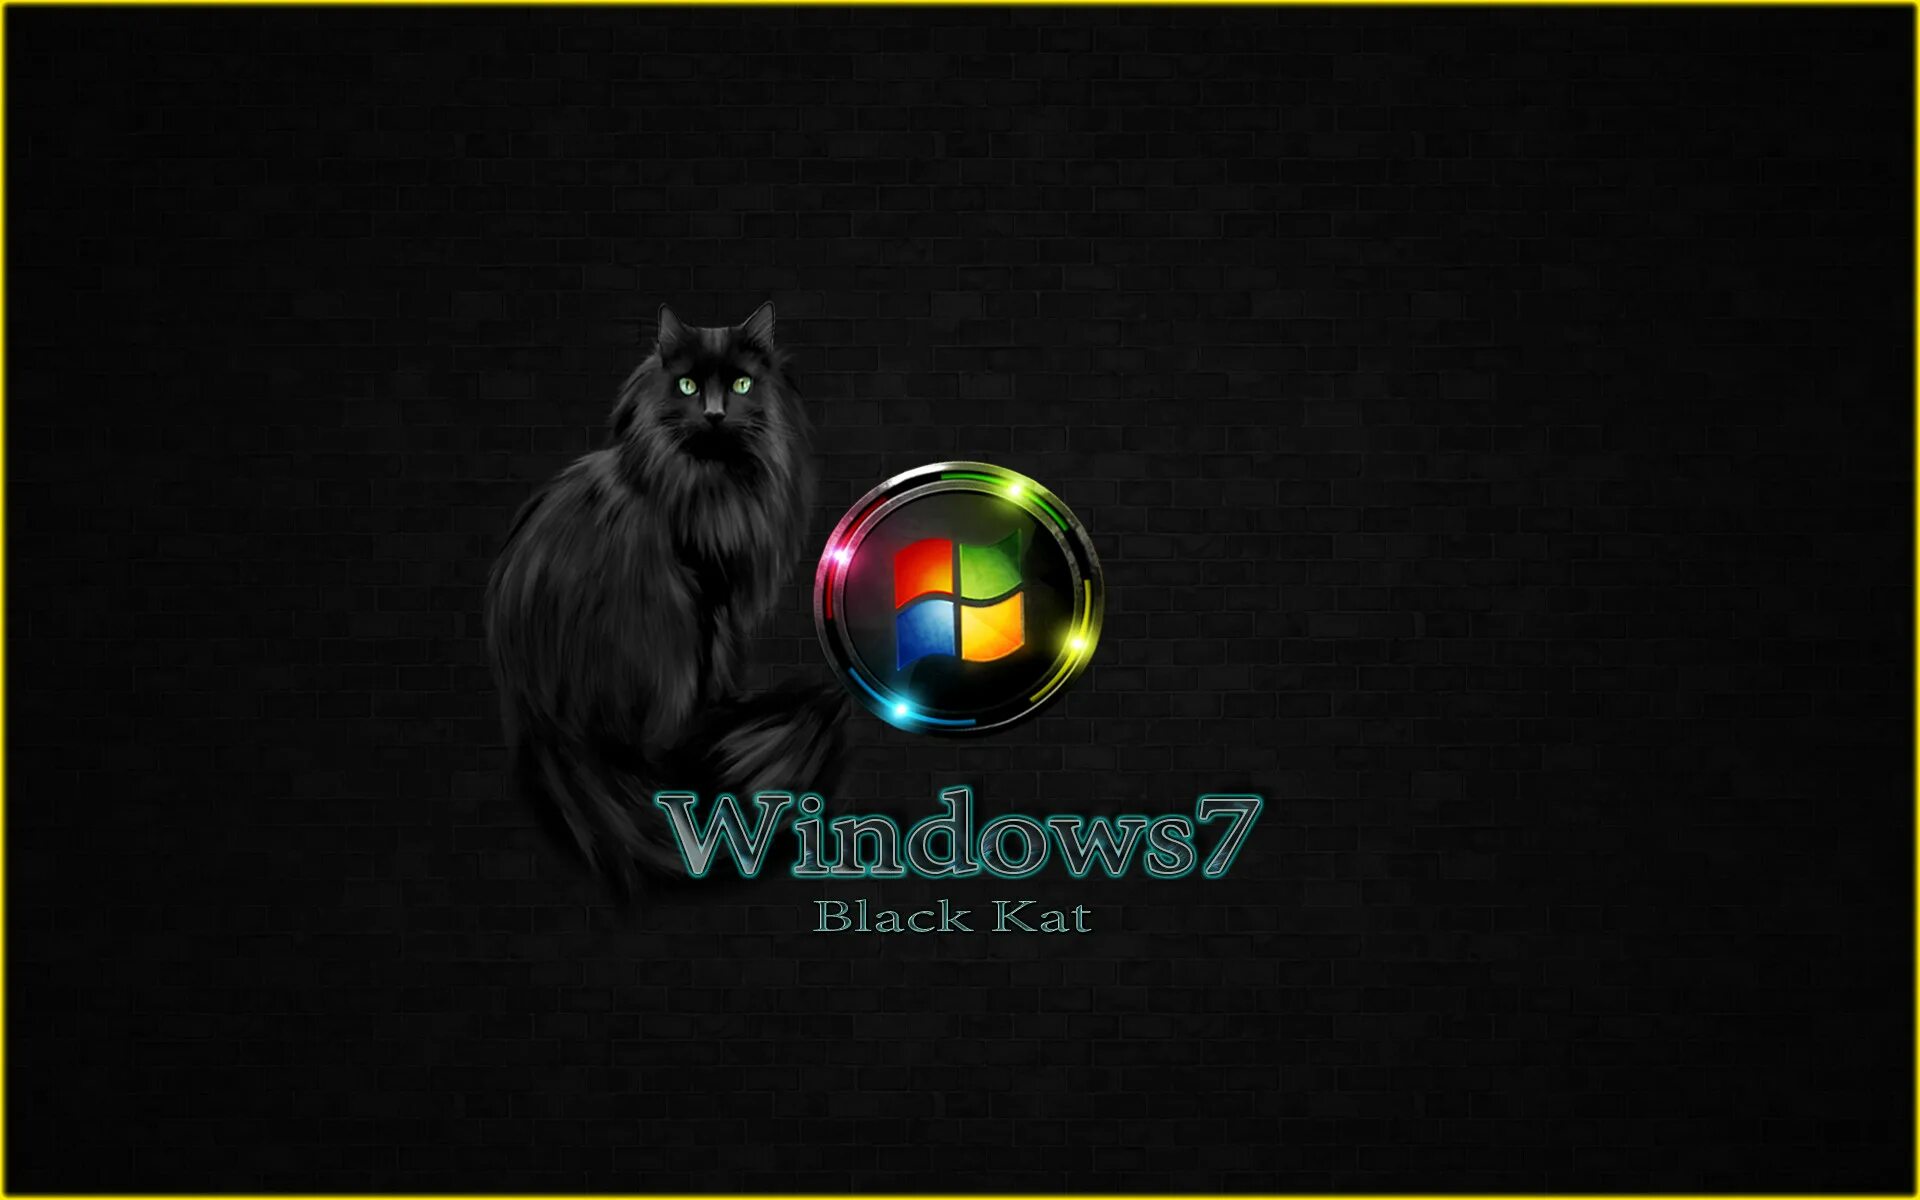 Виндовс 7 зверь. Windows 7 кошка. Виндовс заставка с животными. Кот на рабочем столе виндовс. Красивые обои виндовс 7.